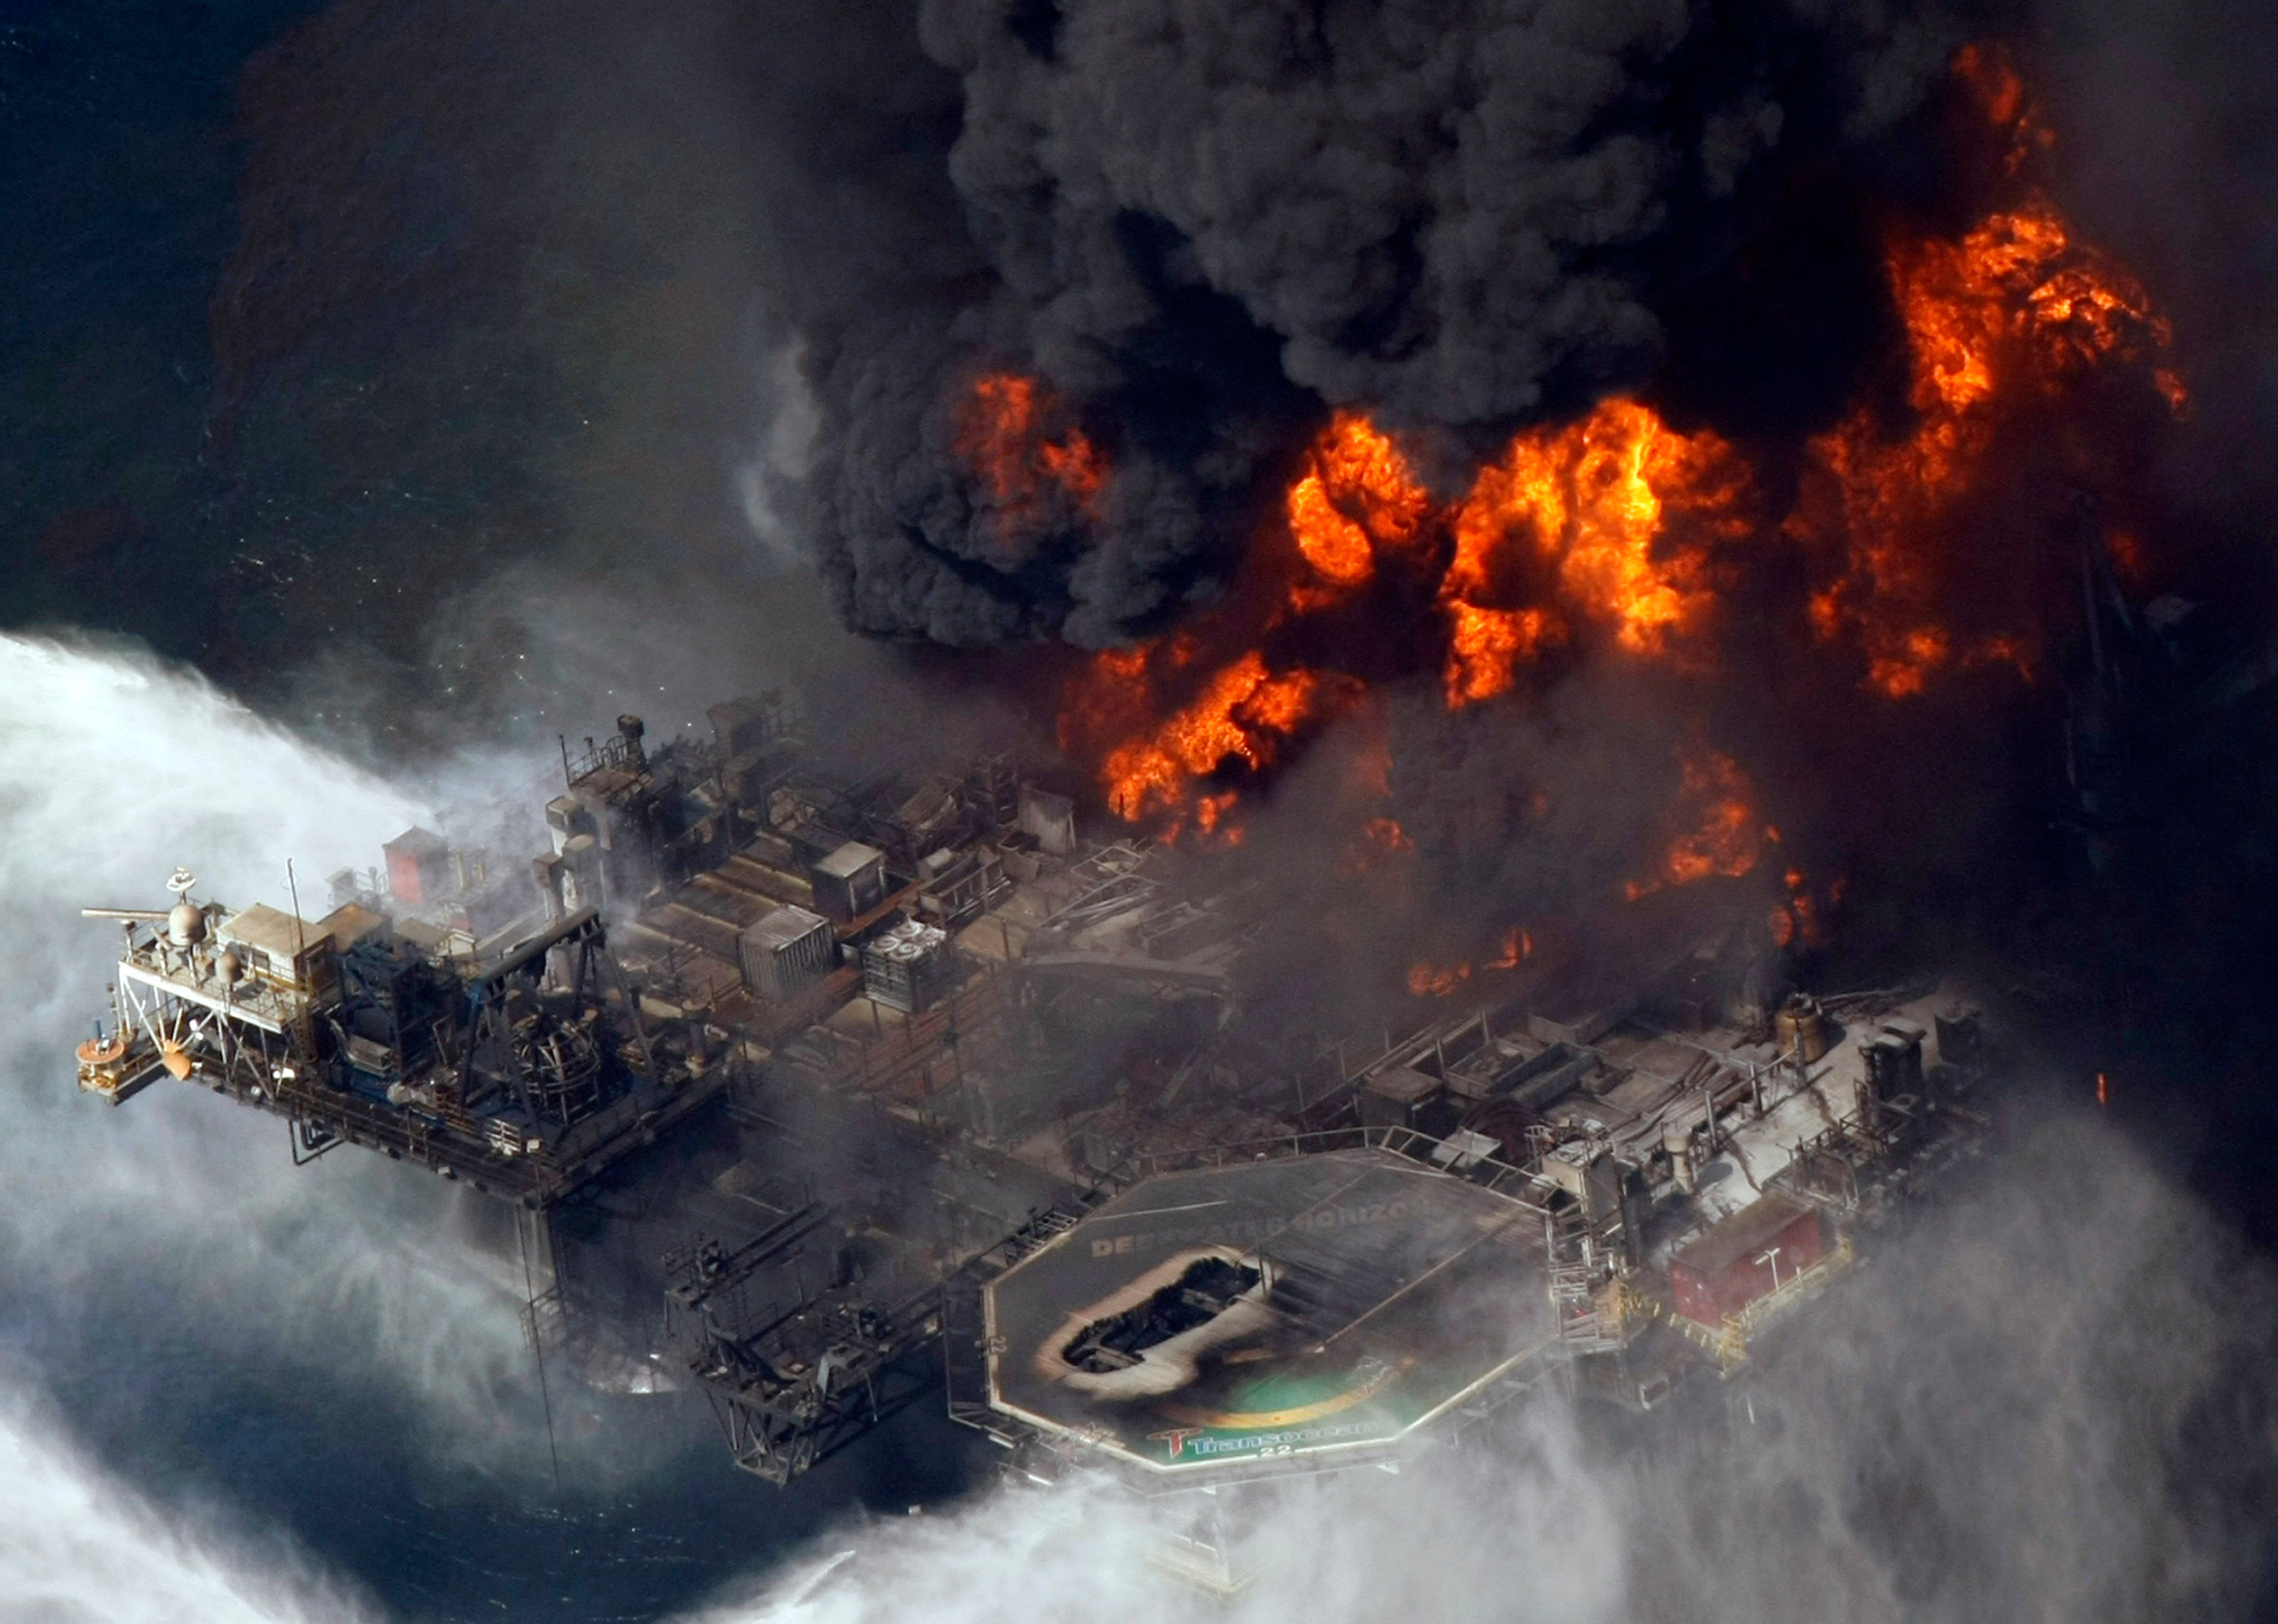 Какая была последняя катастрофа. Взрыв в мексиканском заливе авария на нефтяной платформе Deepwater Horizon. Взрыв нефтяной платформы Deepwater Horizon - 20 апреля 2010 года. Катастрофа Deepwater Horizon в мексиканском заливе. Взрыв нефтяной платформы Deepwater Horizon в мексиканском заливе 2010.